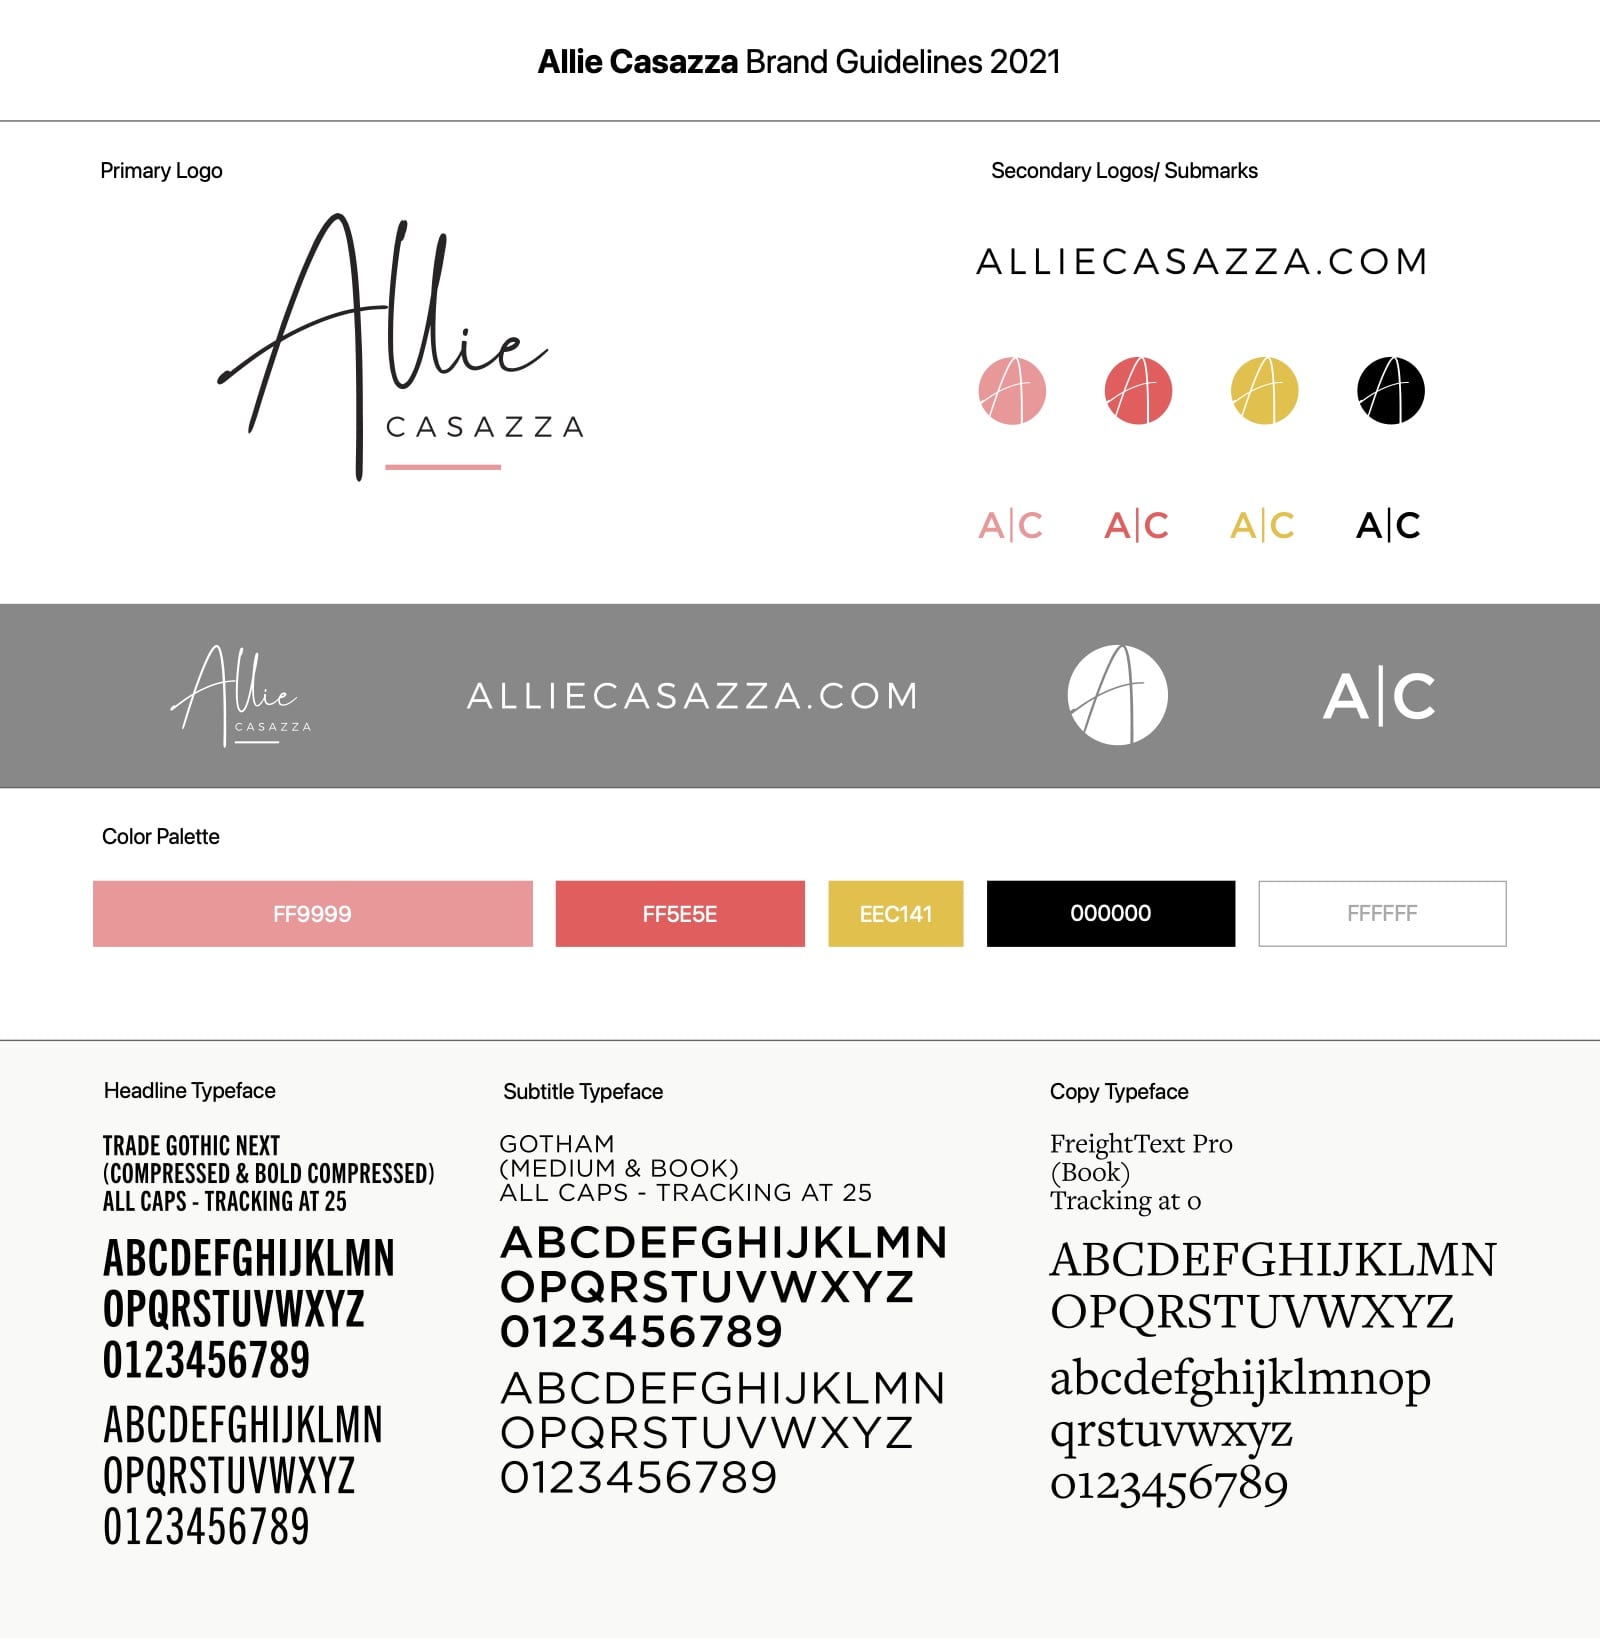 AllieCasazza2021-Brand-Guidelines